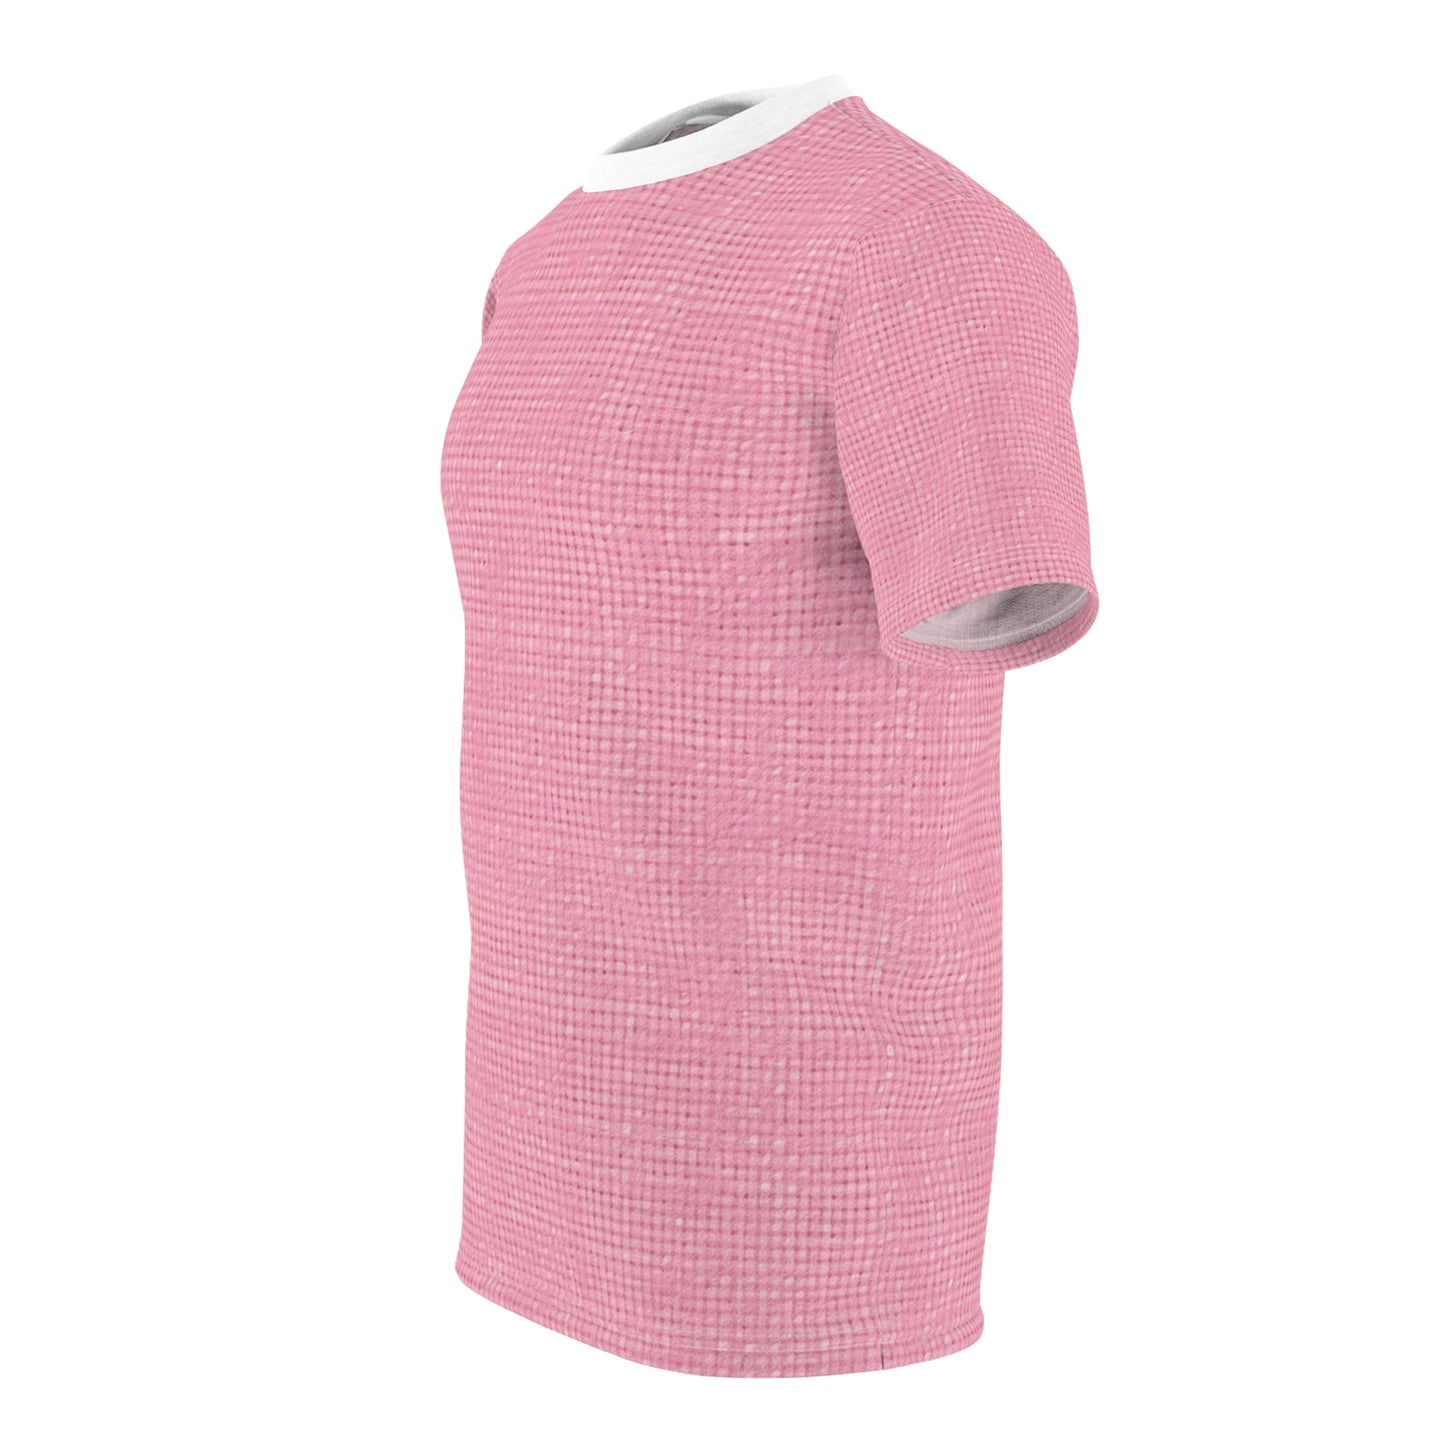 Pastel Rose Pink: Denim-Inspired, Refreshing Fabric Design - Unisex Cut & Sew Tee (AOP)